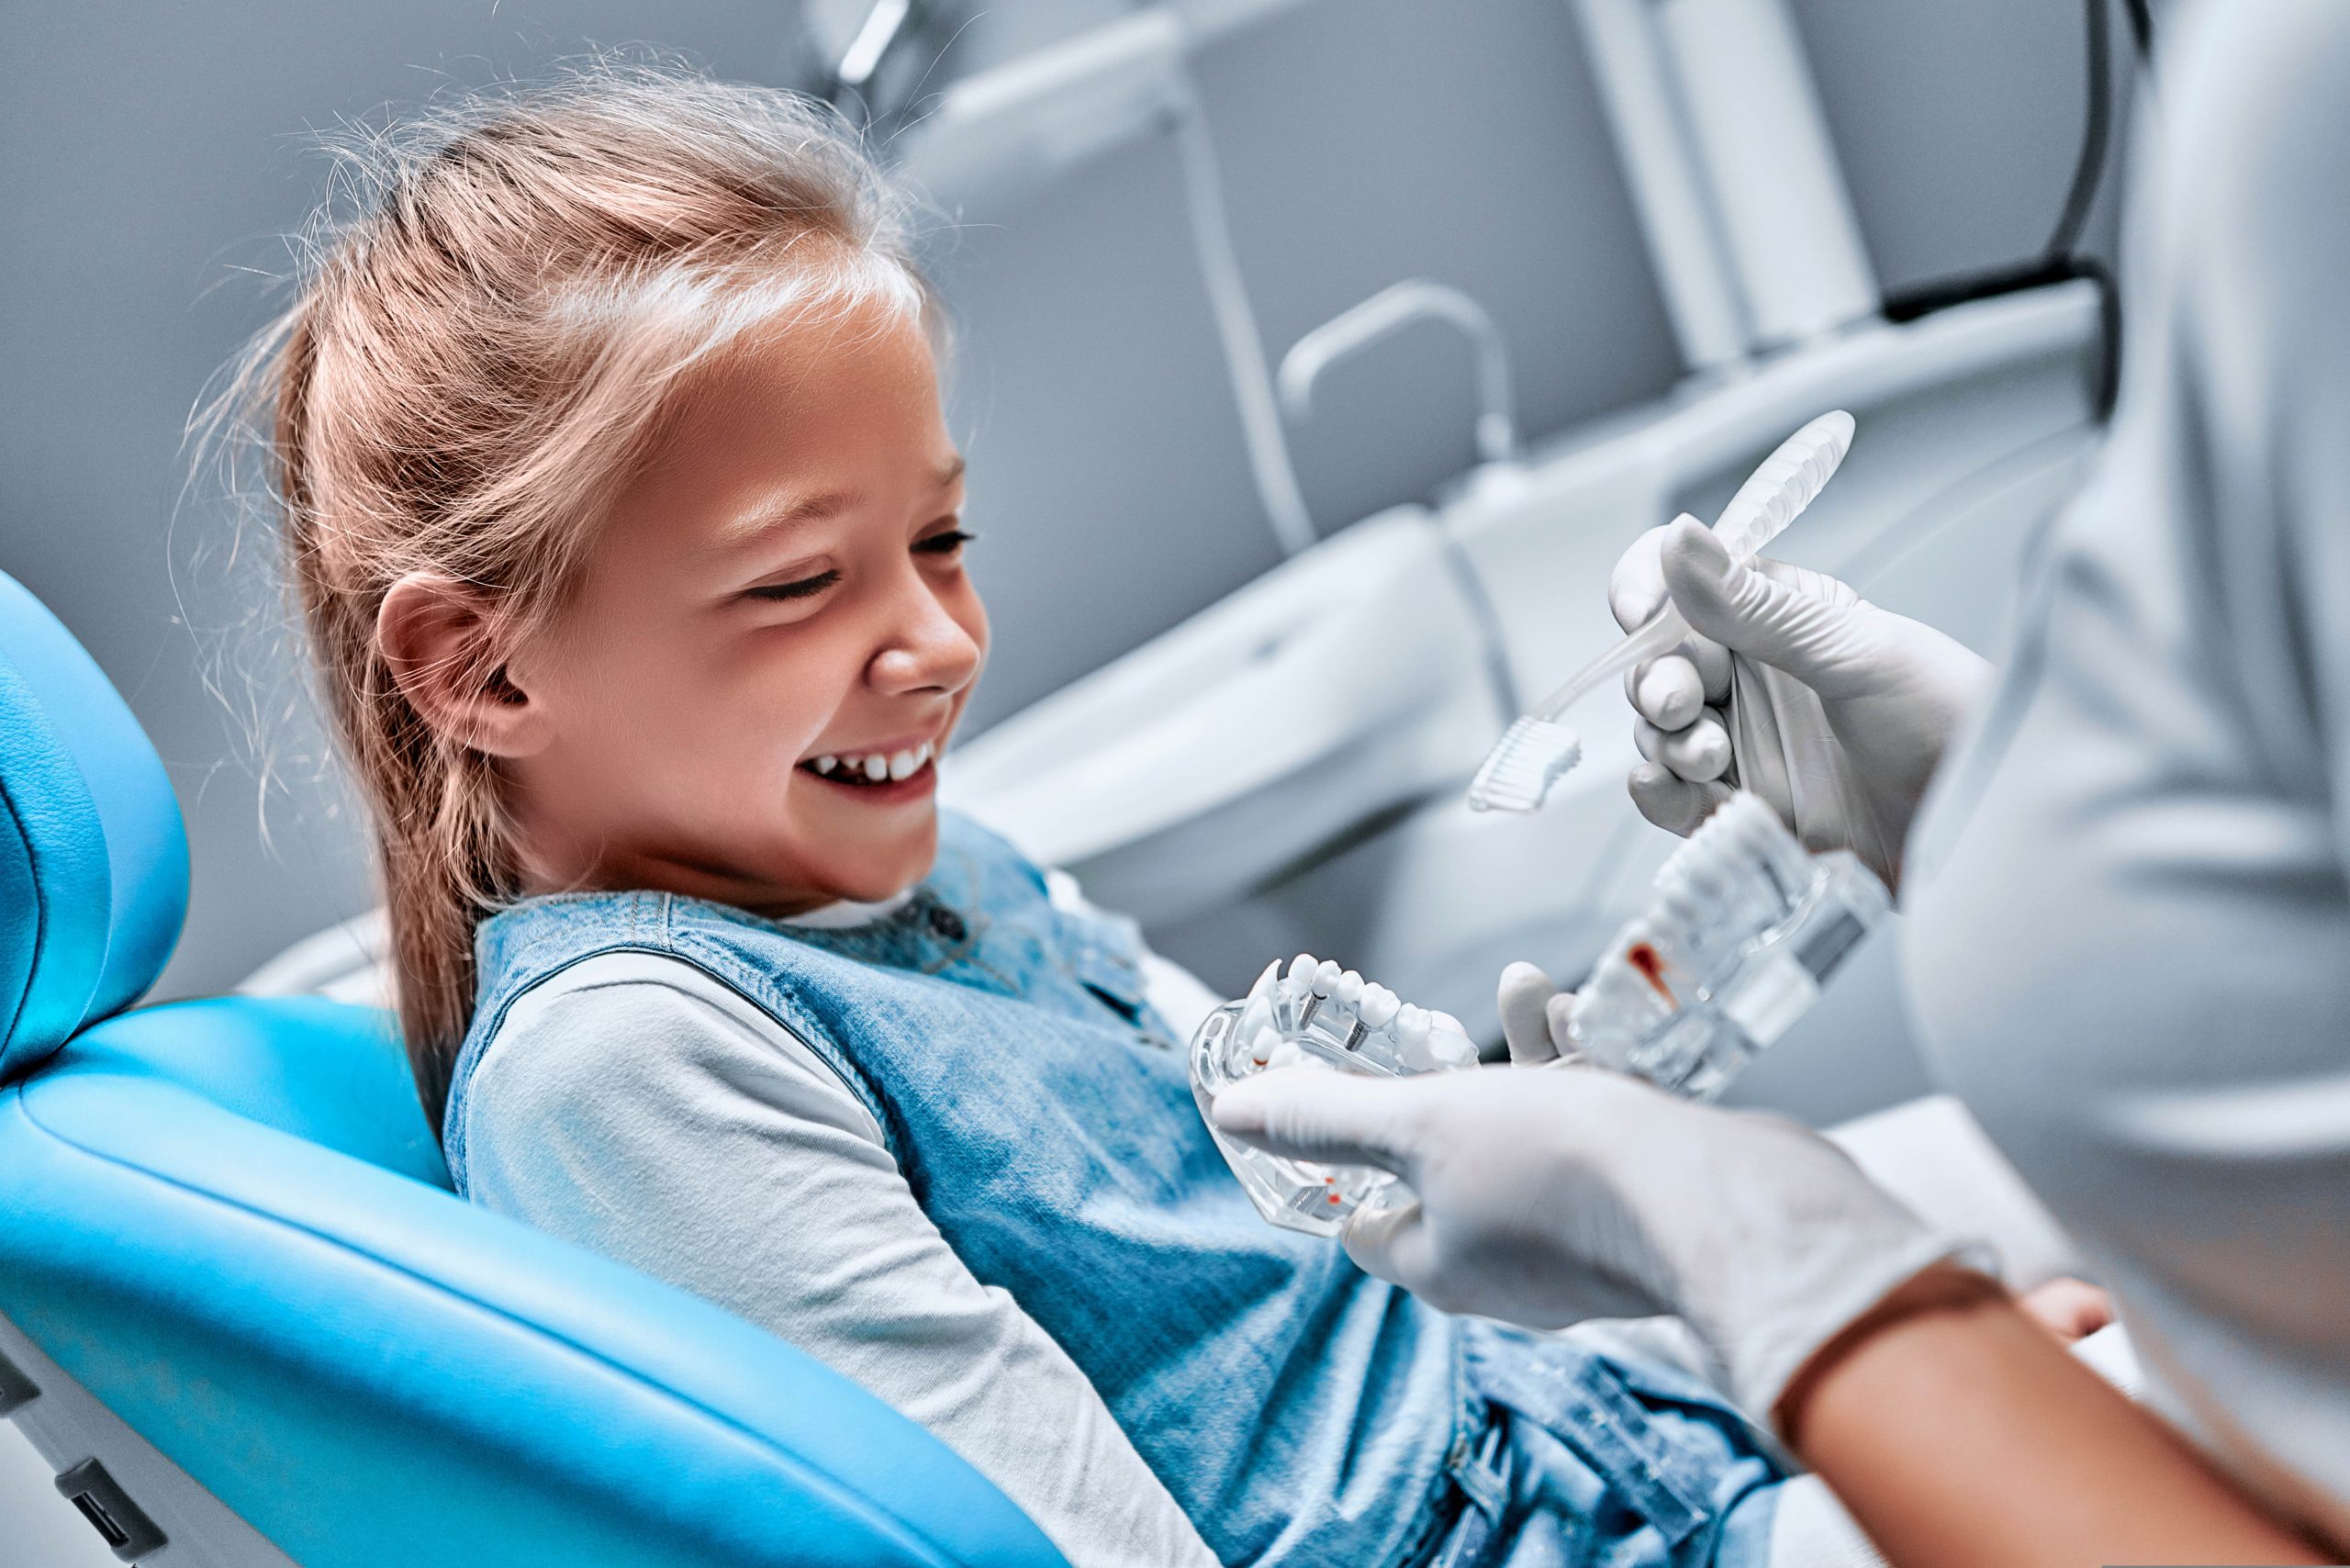 Dental exam for children at Smile Clinic London 